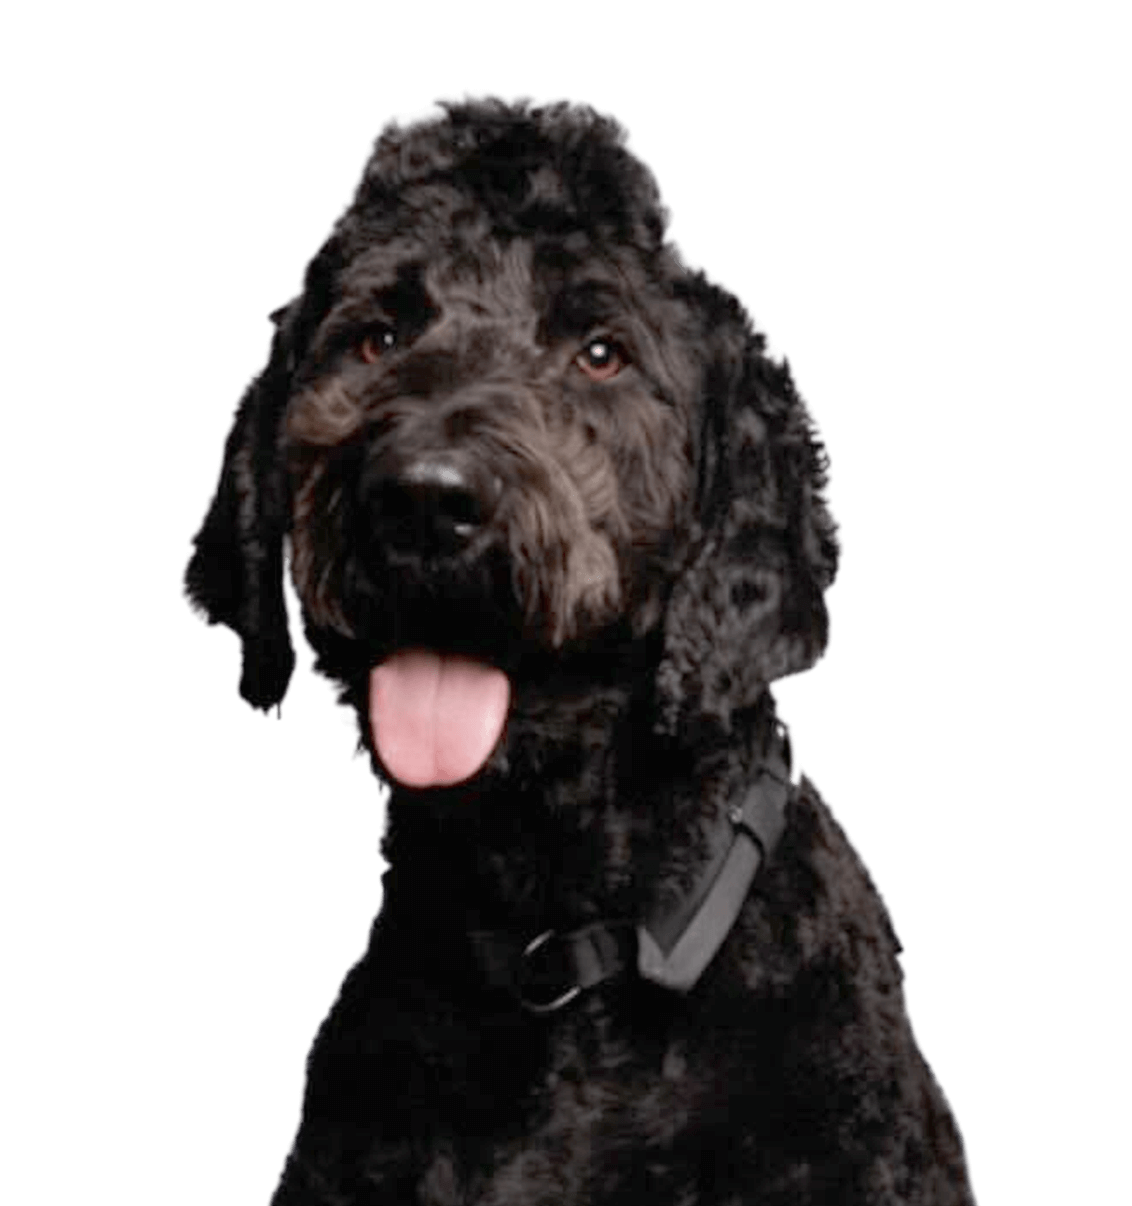 Black fluffy dog smiling at camera portrait